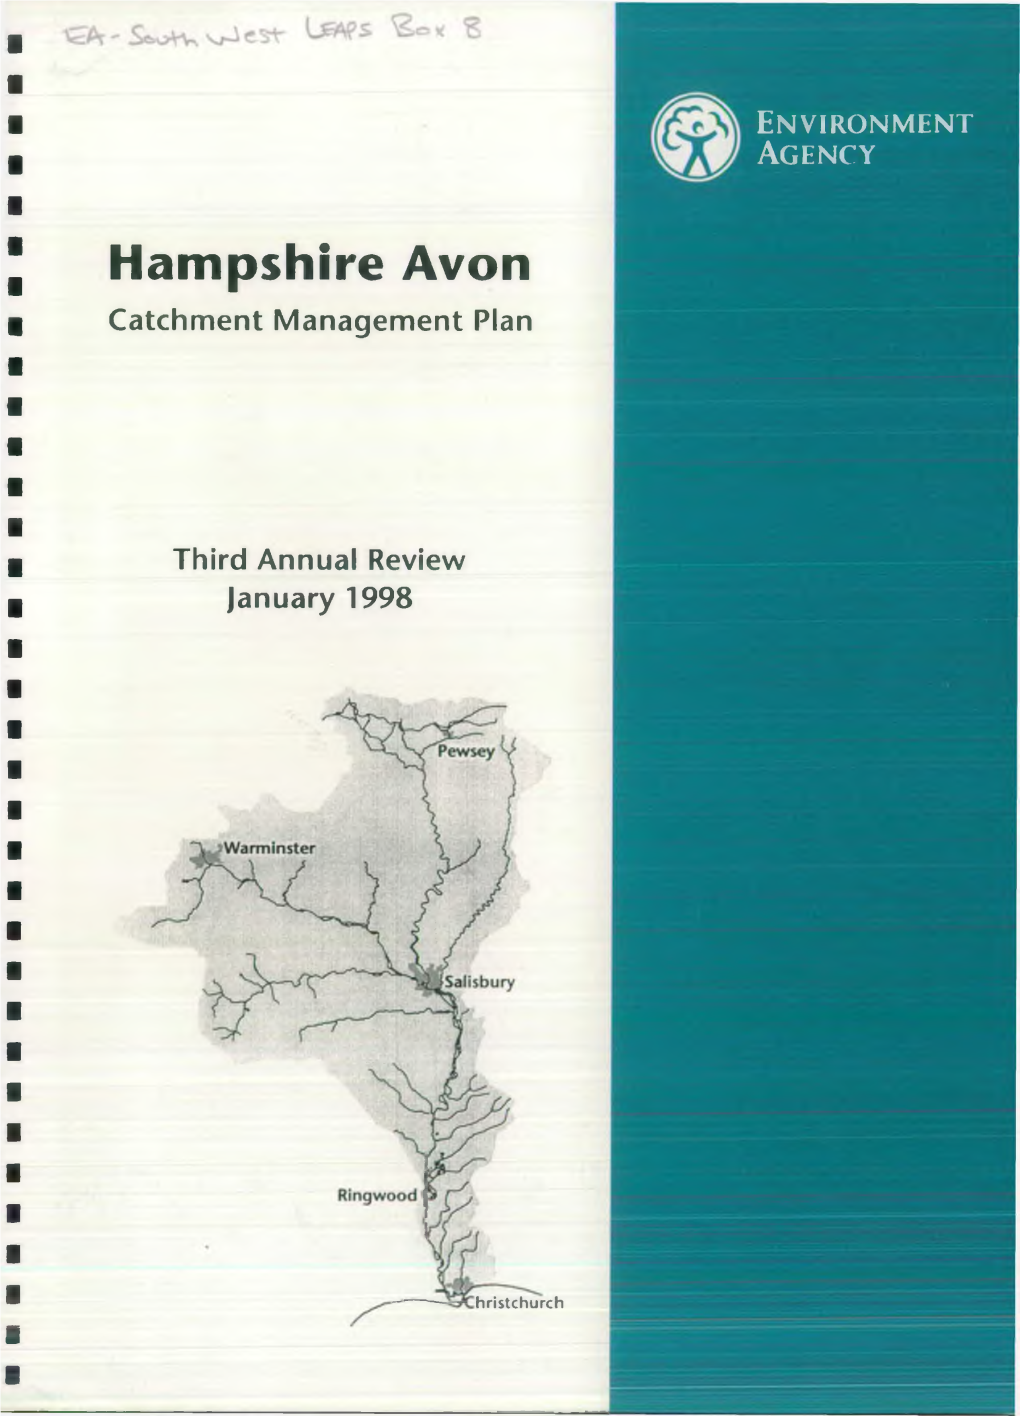 Hampshire Avon Catchment Management Plan